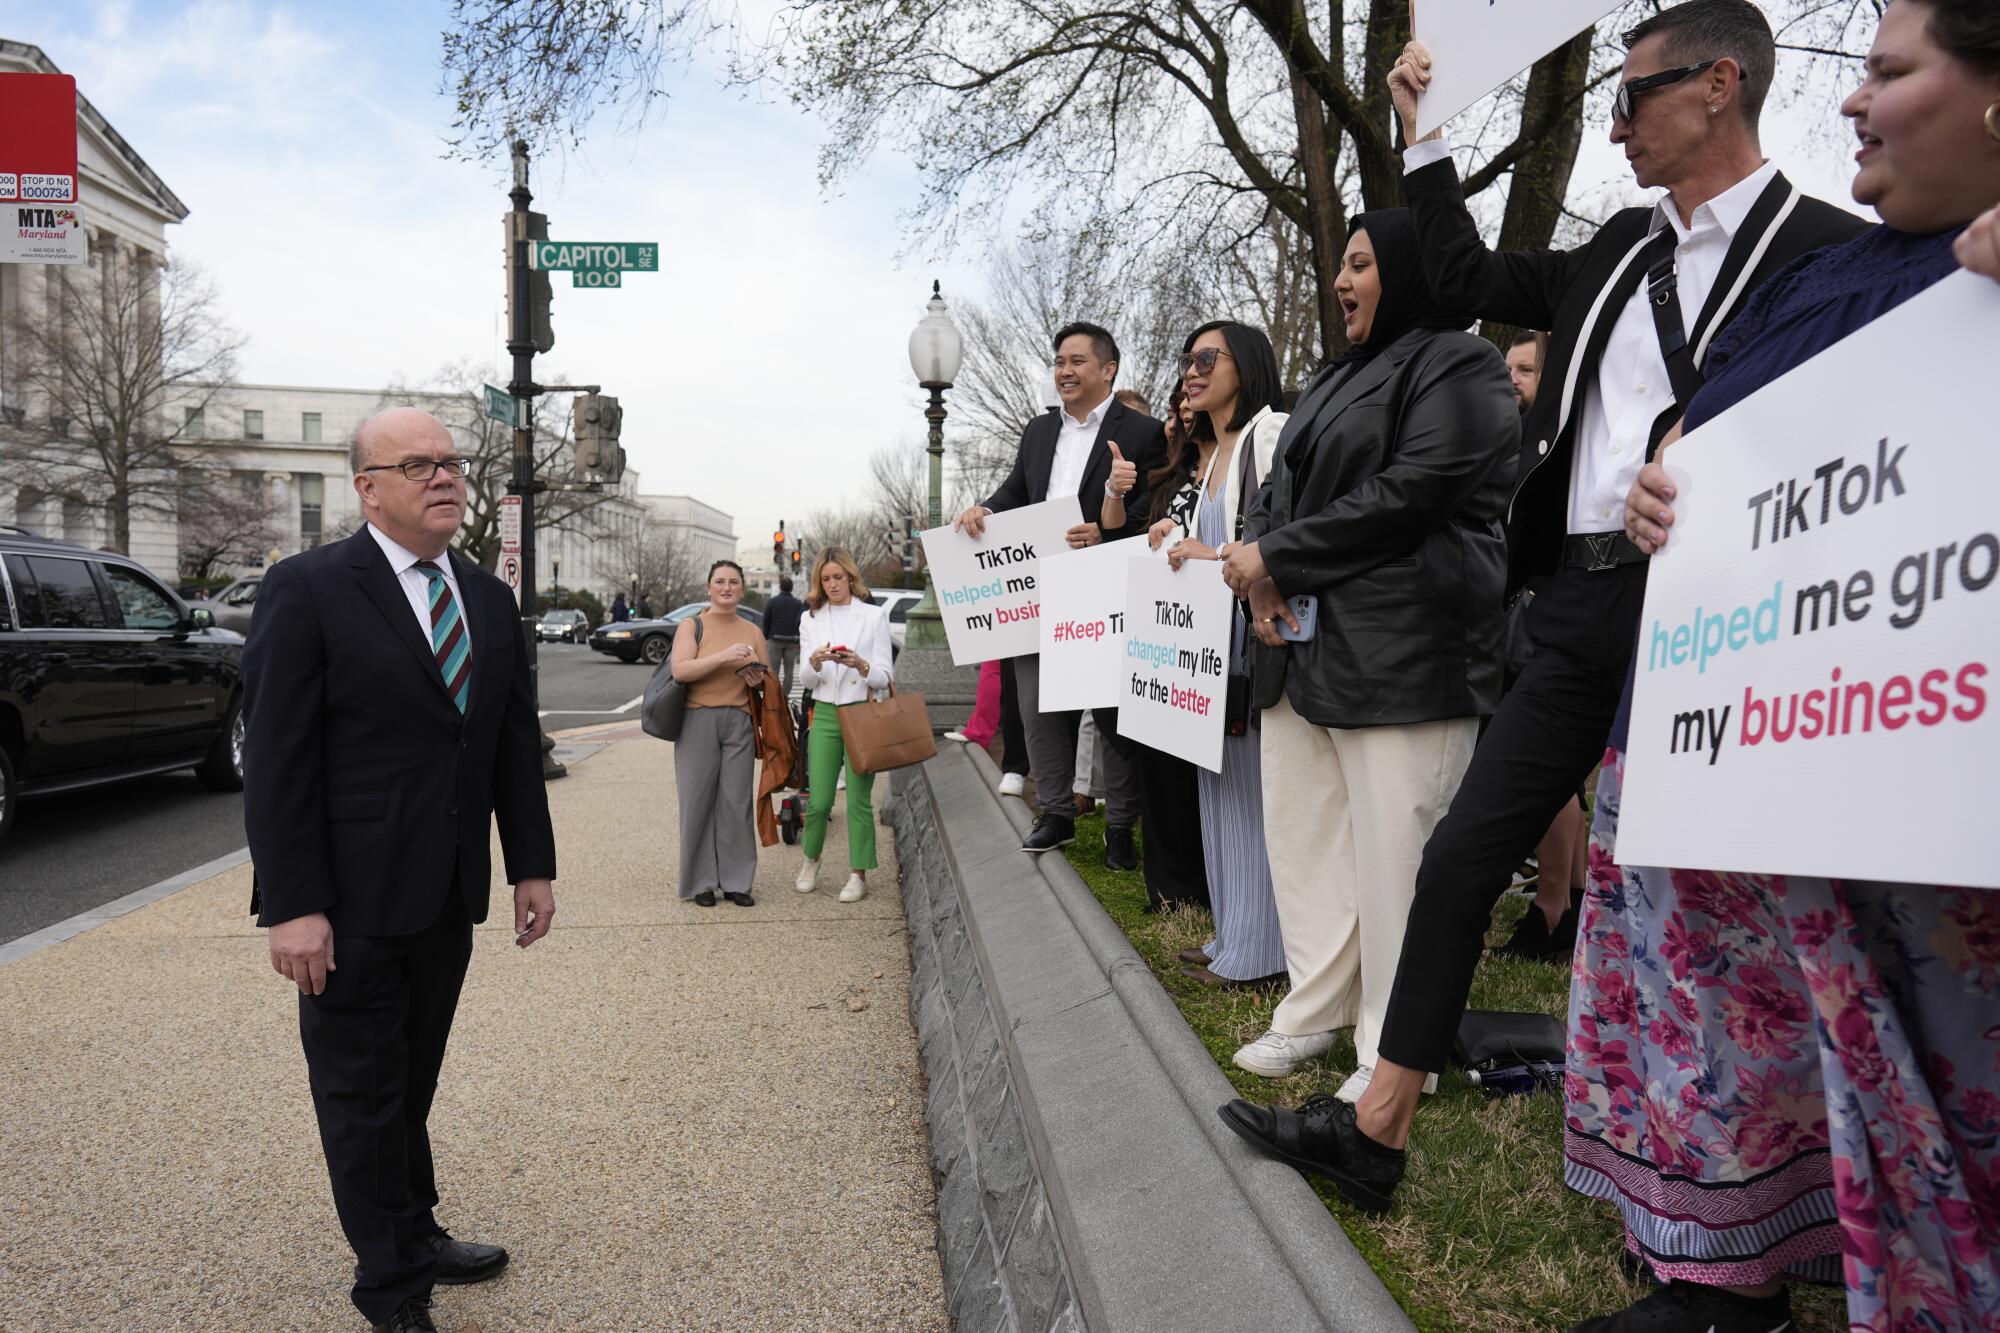 人们在美国国会大厦附近的人行道上排起队伍，举着支持 TikTok 的标语，旁边是一名西装革履的男子